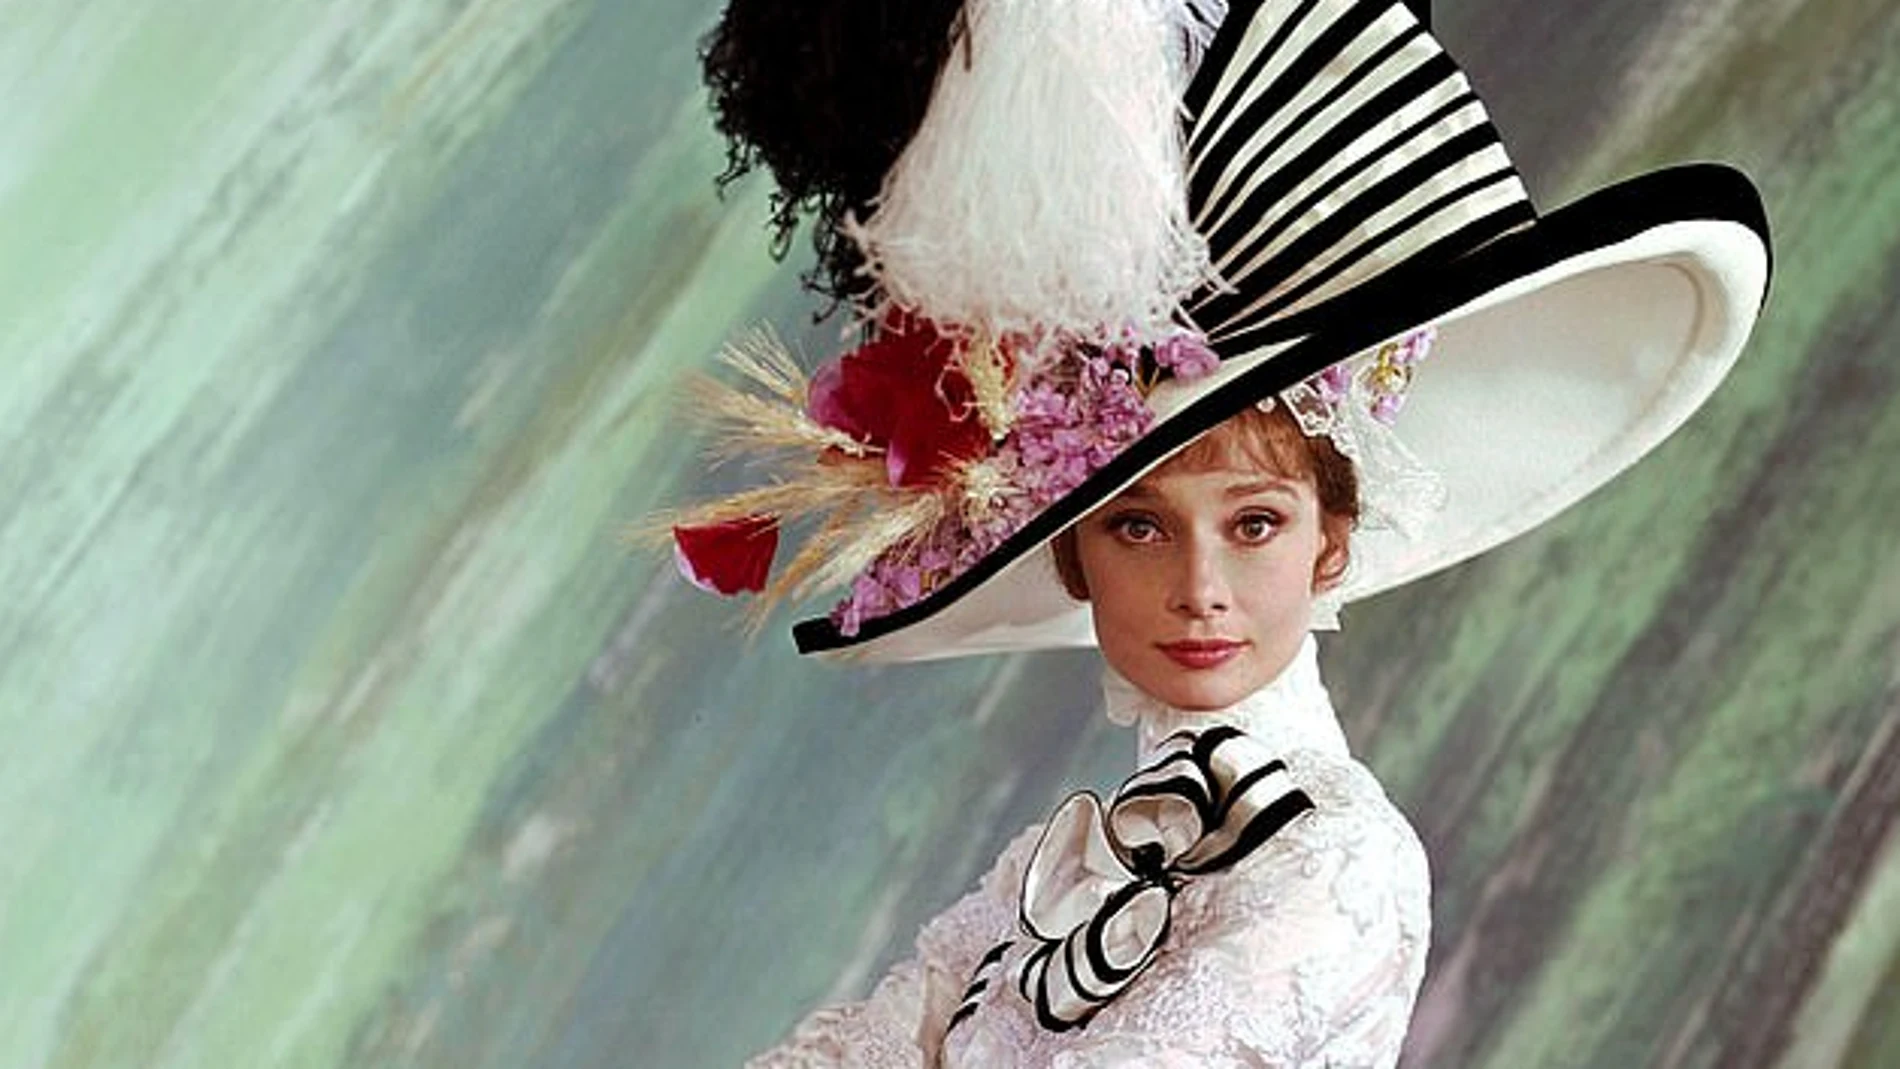 En "My Fair Lady", la adaptación cinematográfica de la célebre obra de Bernard Shaw titulada "El pigmalión", Audrey Hepburn da vida a una florista